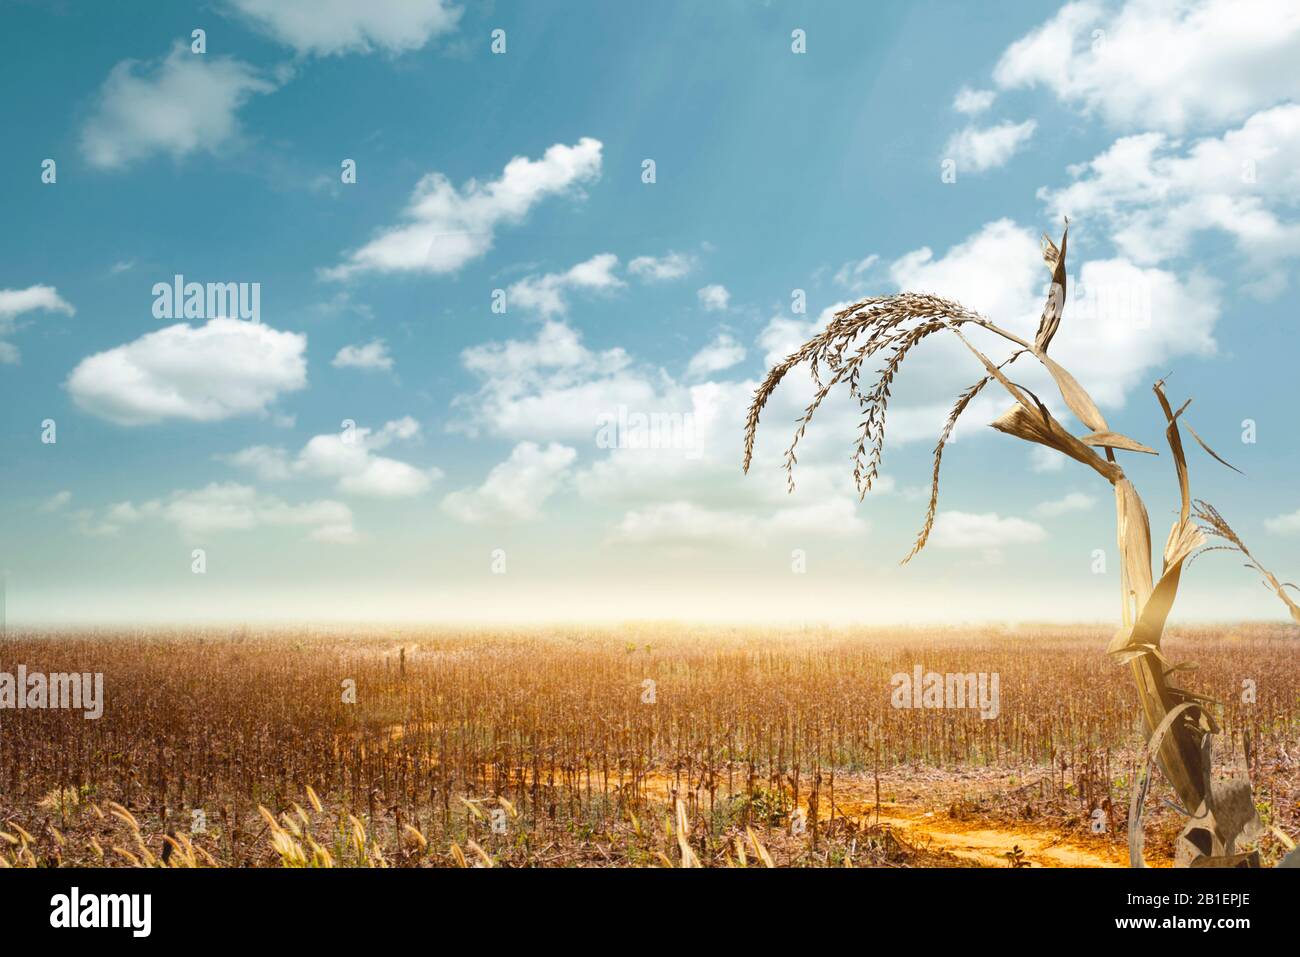 La sequía ha diezmado una cosecha de maíz y ha dejado las plantas secas y muertas. Símbolo del calentamiento global y el cambio climático. Foto de stock